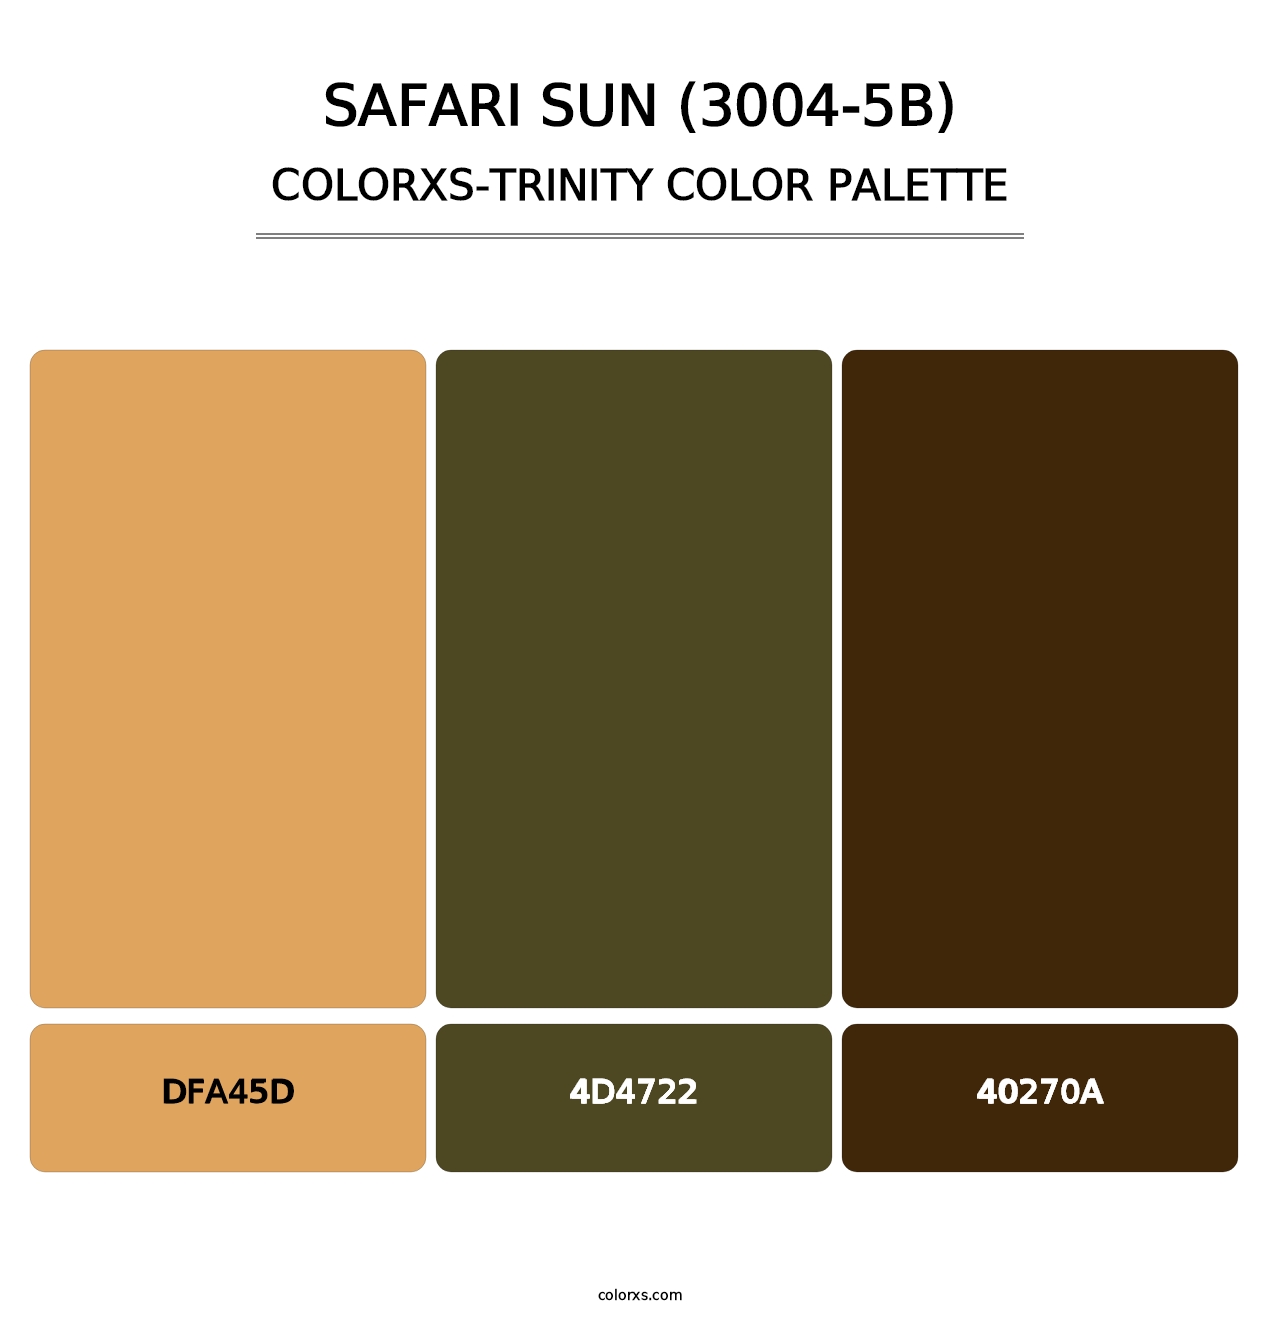 Safari Sun (3004-5B) - Colorxs Trinity Palette